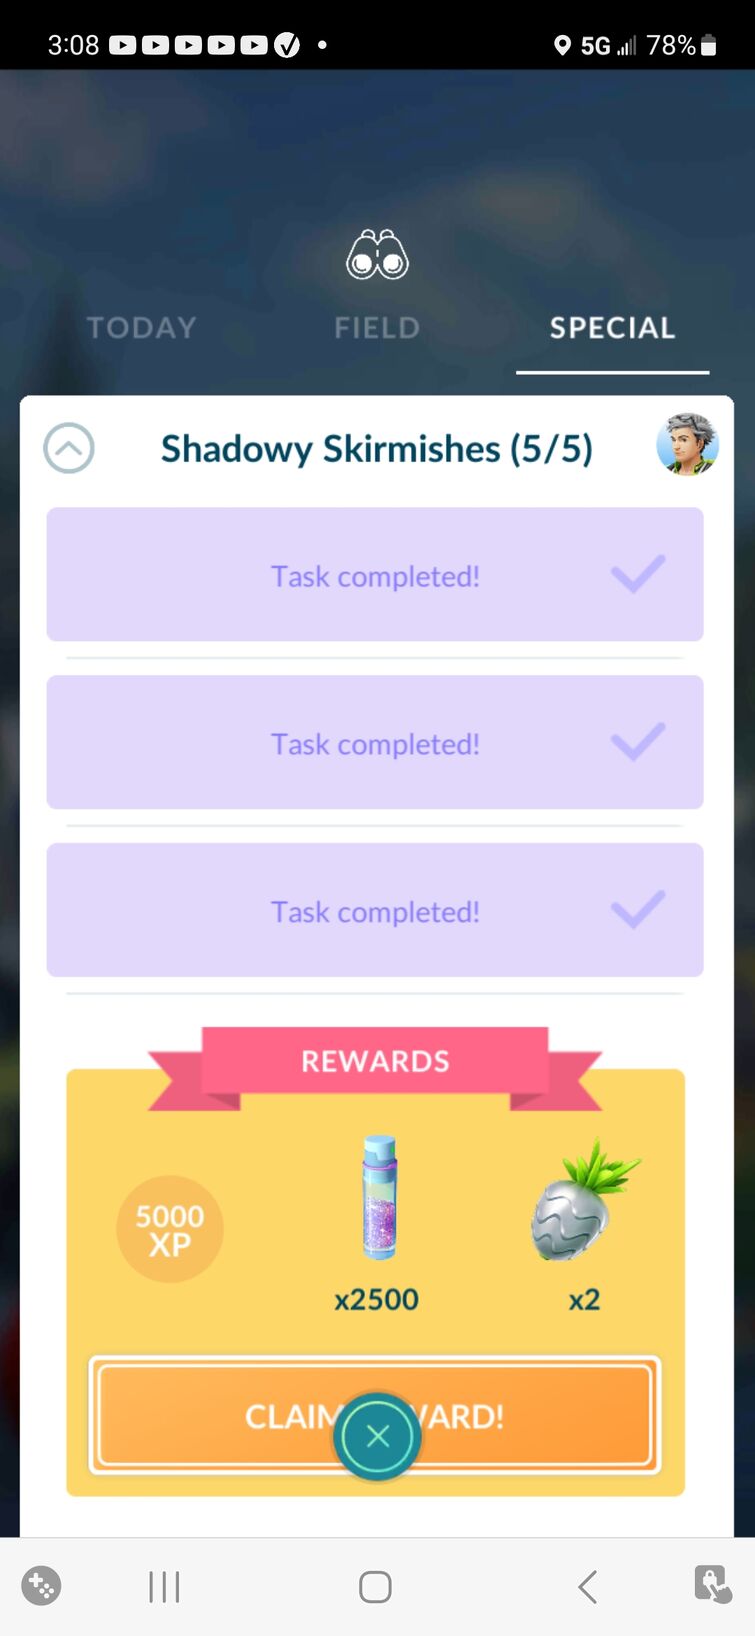 Pokémon Go Shadowy Skirmishes quest steps